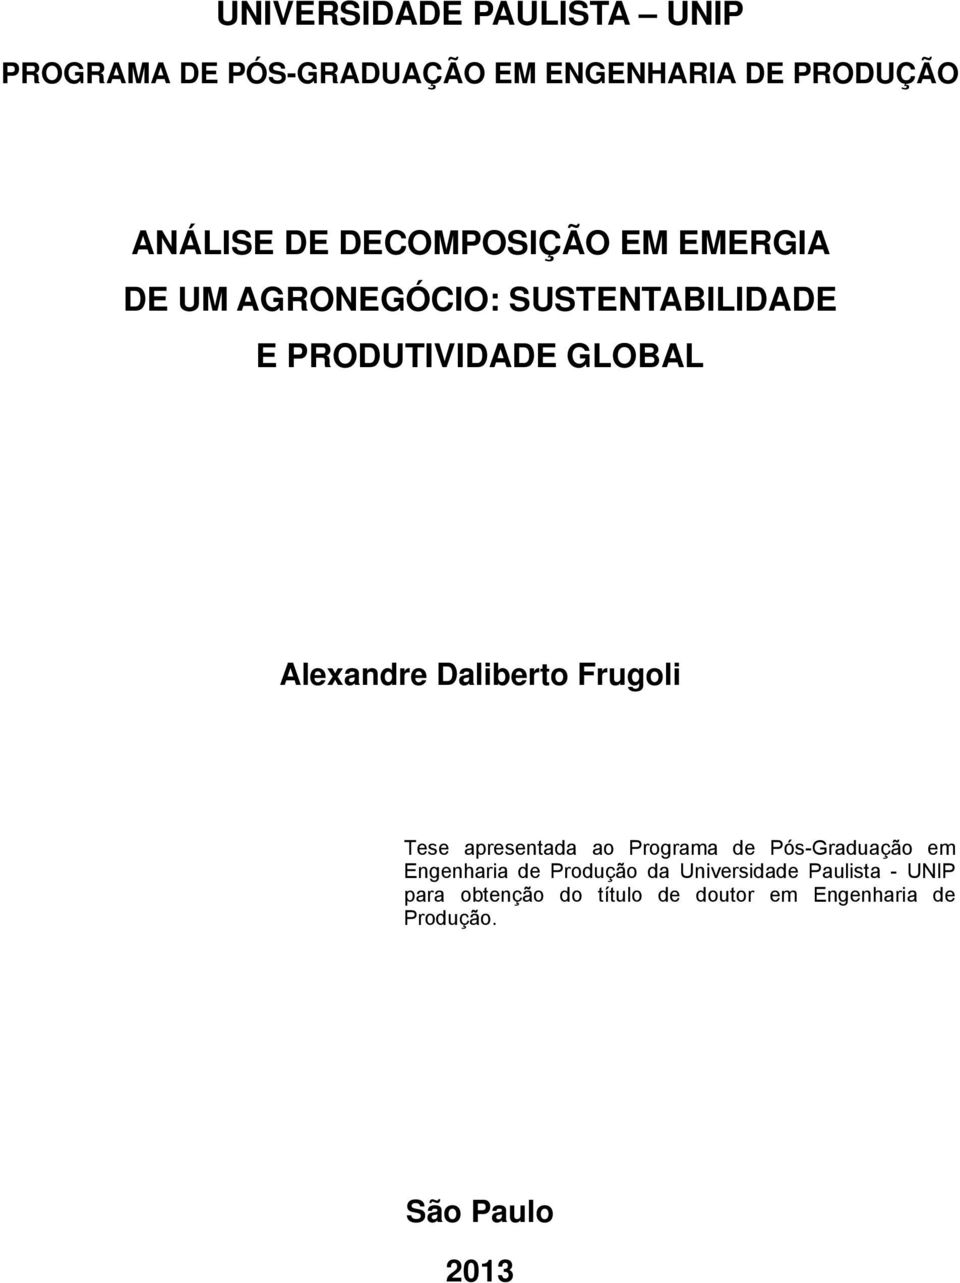 Daliberto Frugoli Tese apresentada ao Programa de Pós-Graduação em Engenharia de Produção da